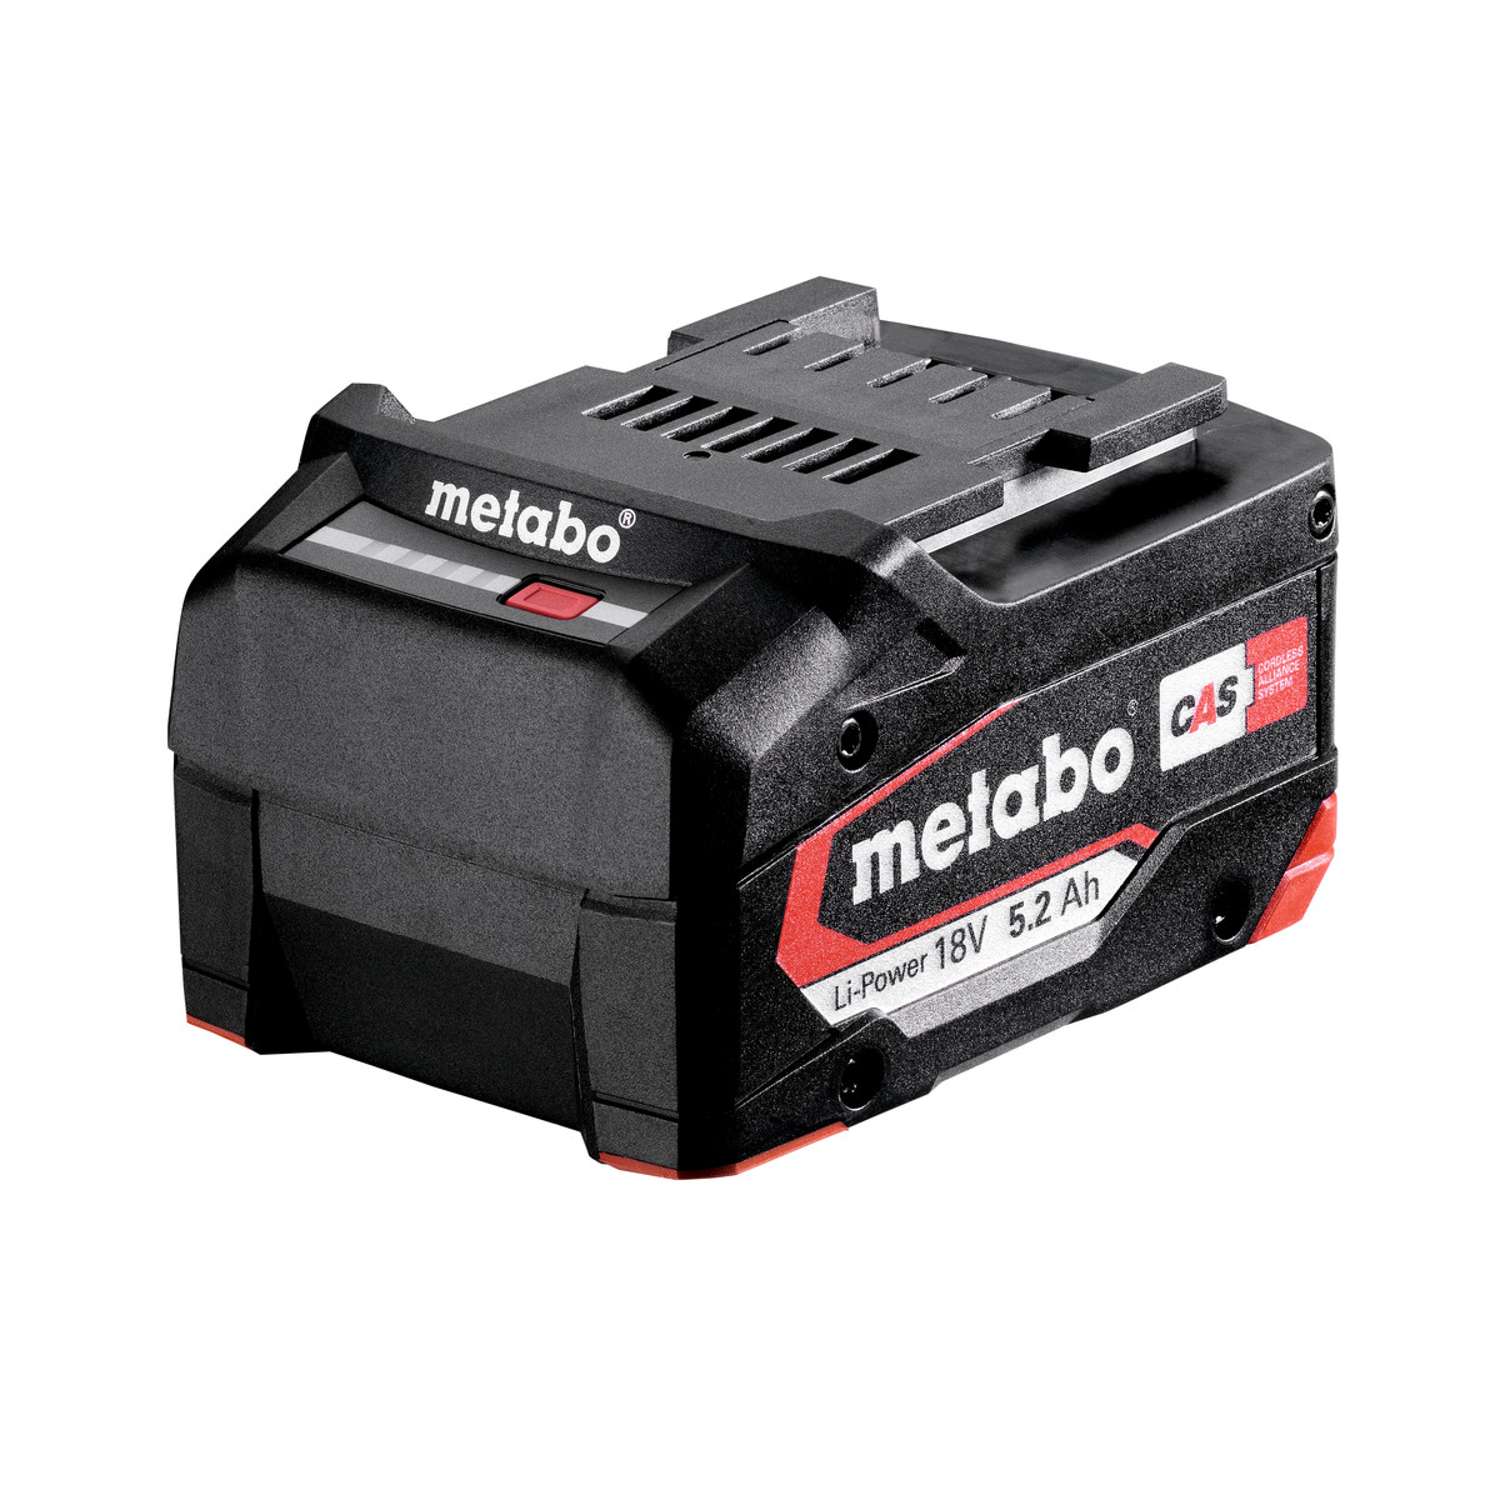 Se METABO Batteri LI-Power 18 V 5,2Ah hos Toolster.dk